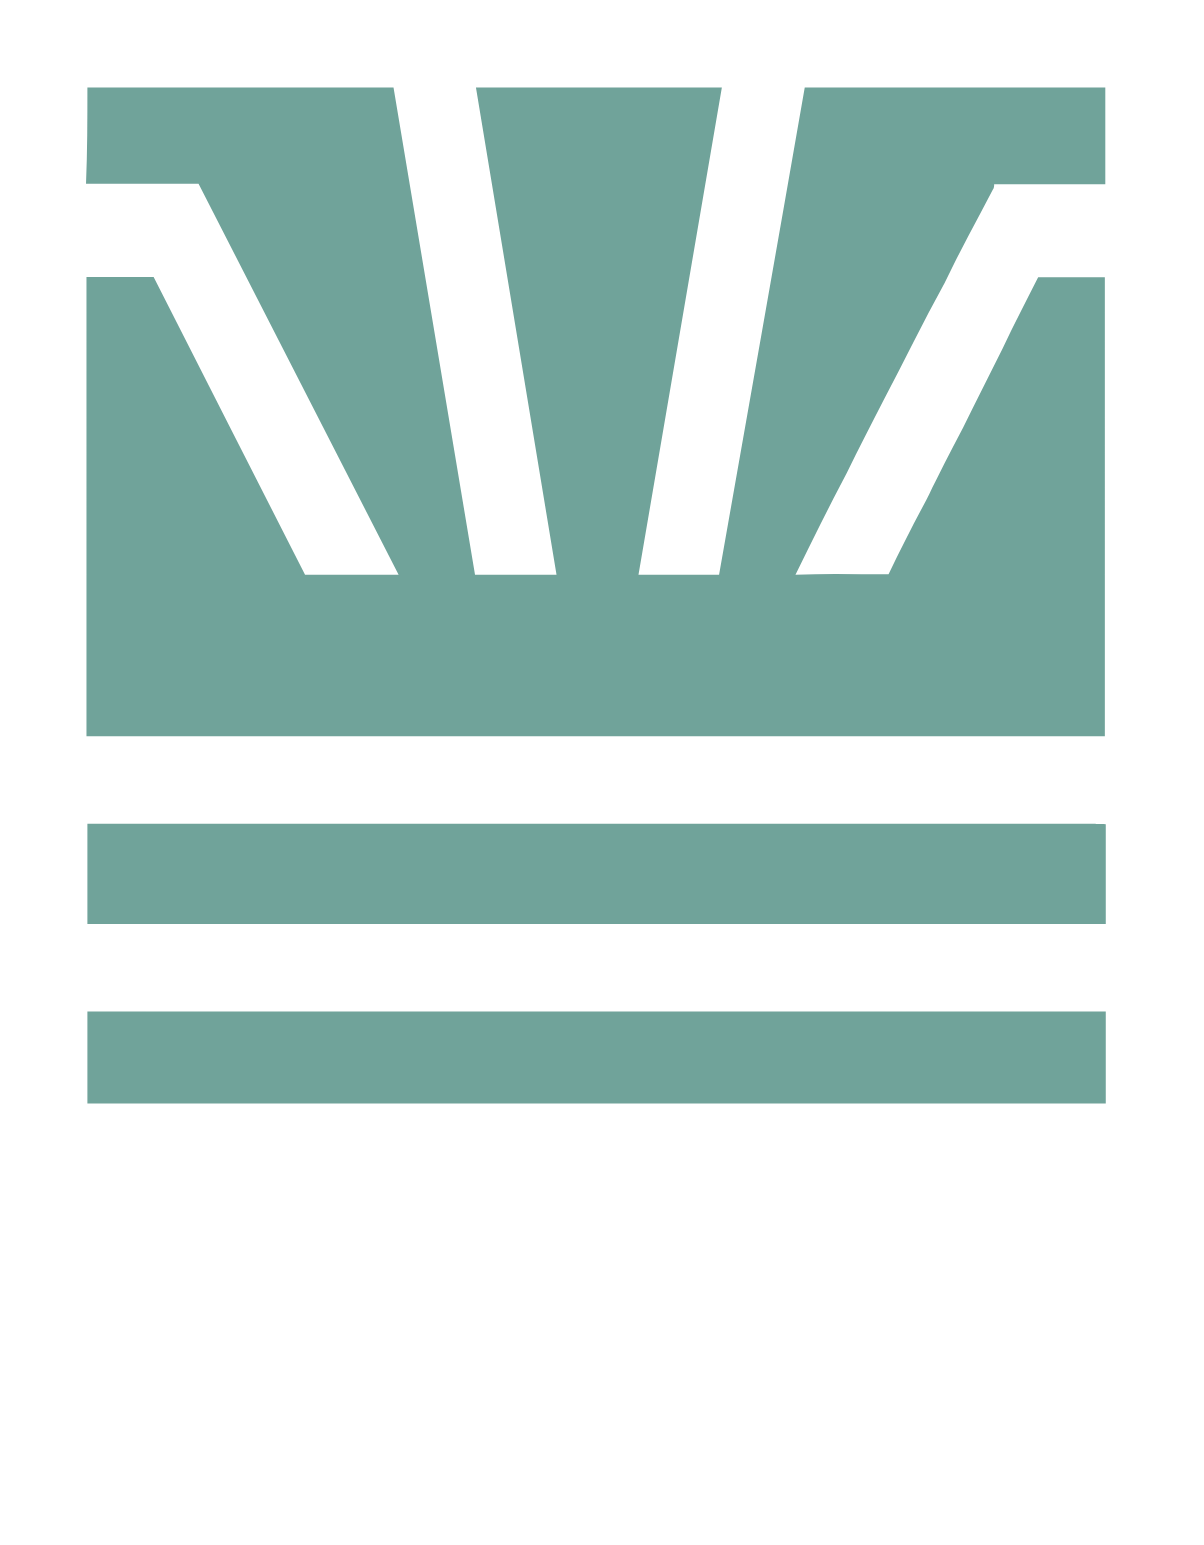 IRSA Inversiones y Representaciones Logo groß für dunkle Hintergründe (transparentes PNG)